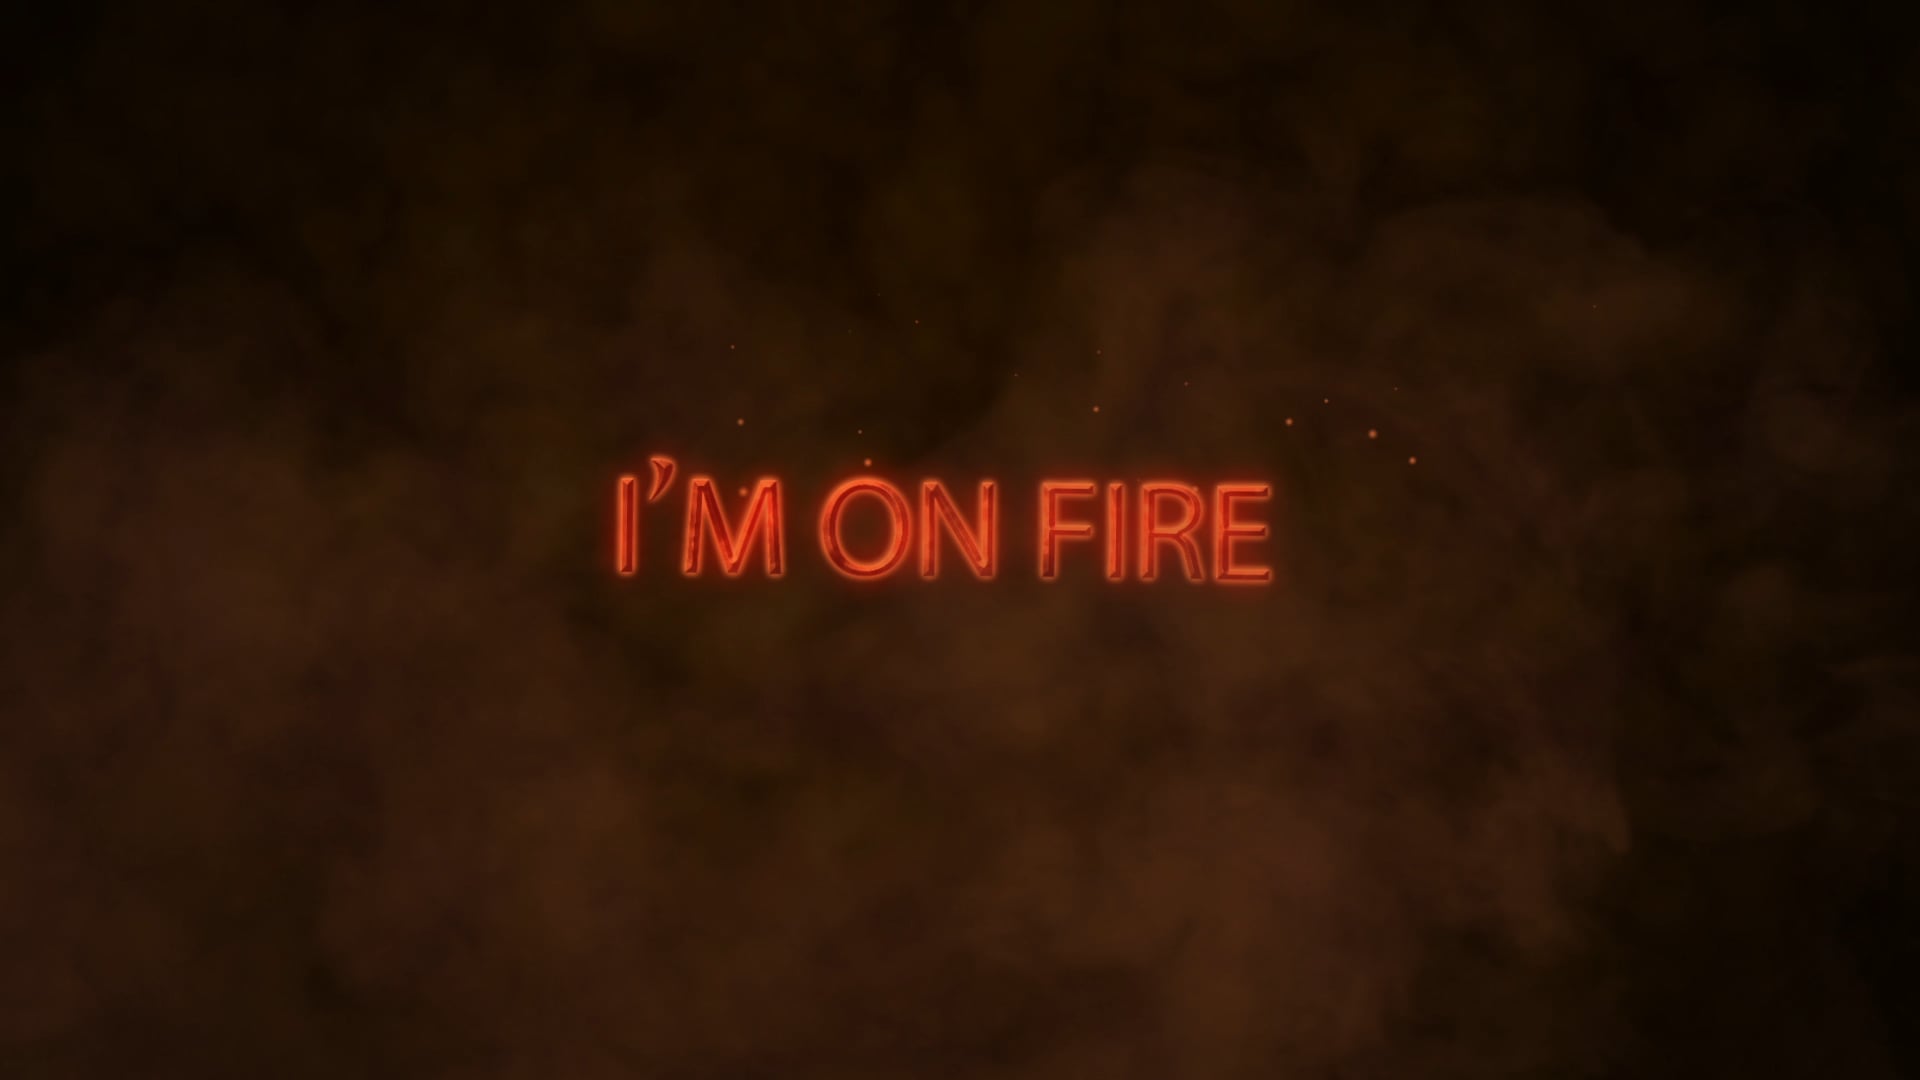 Fire Text